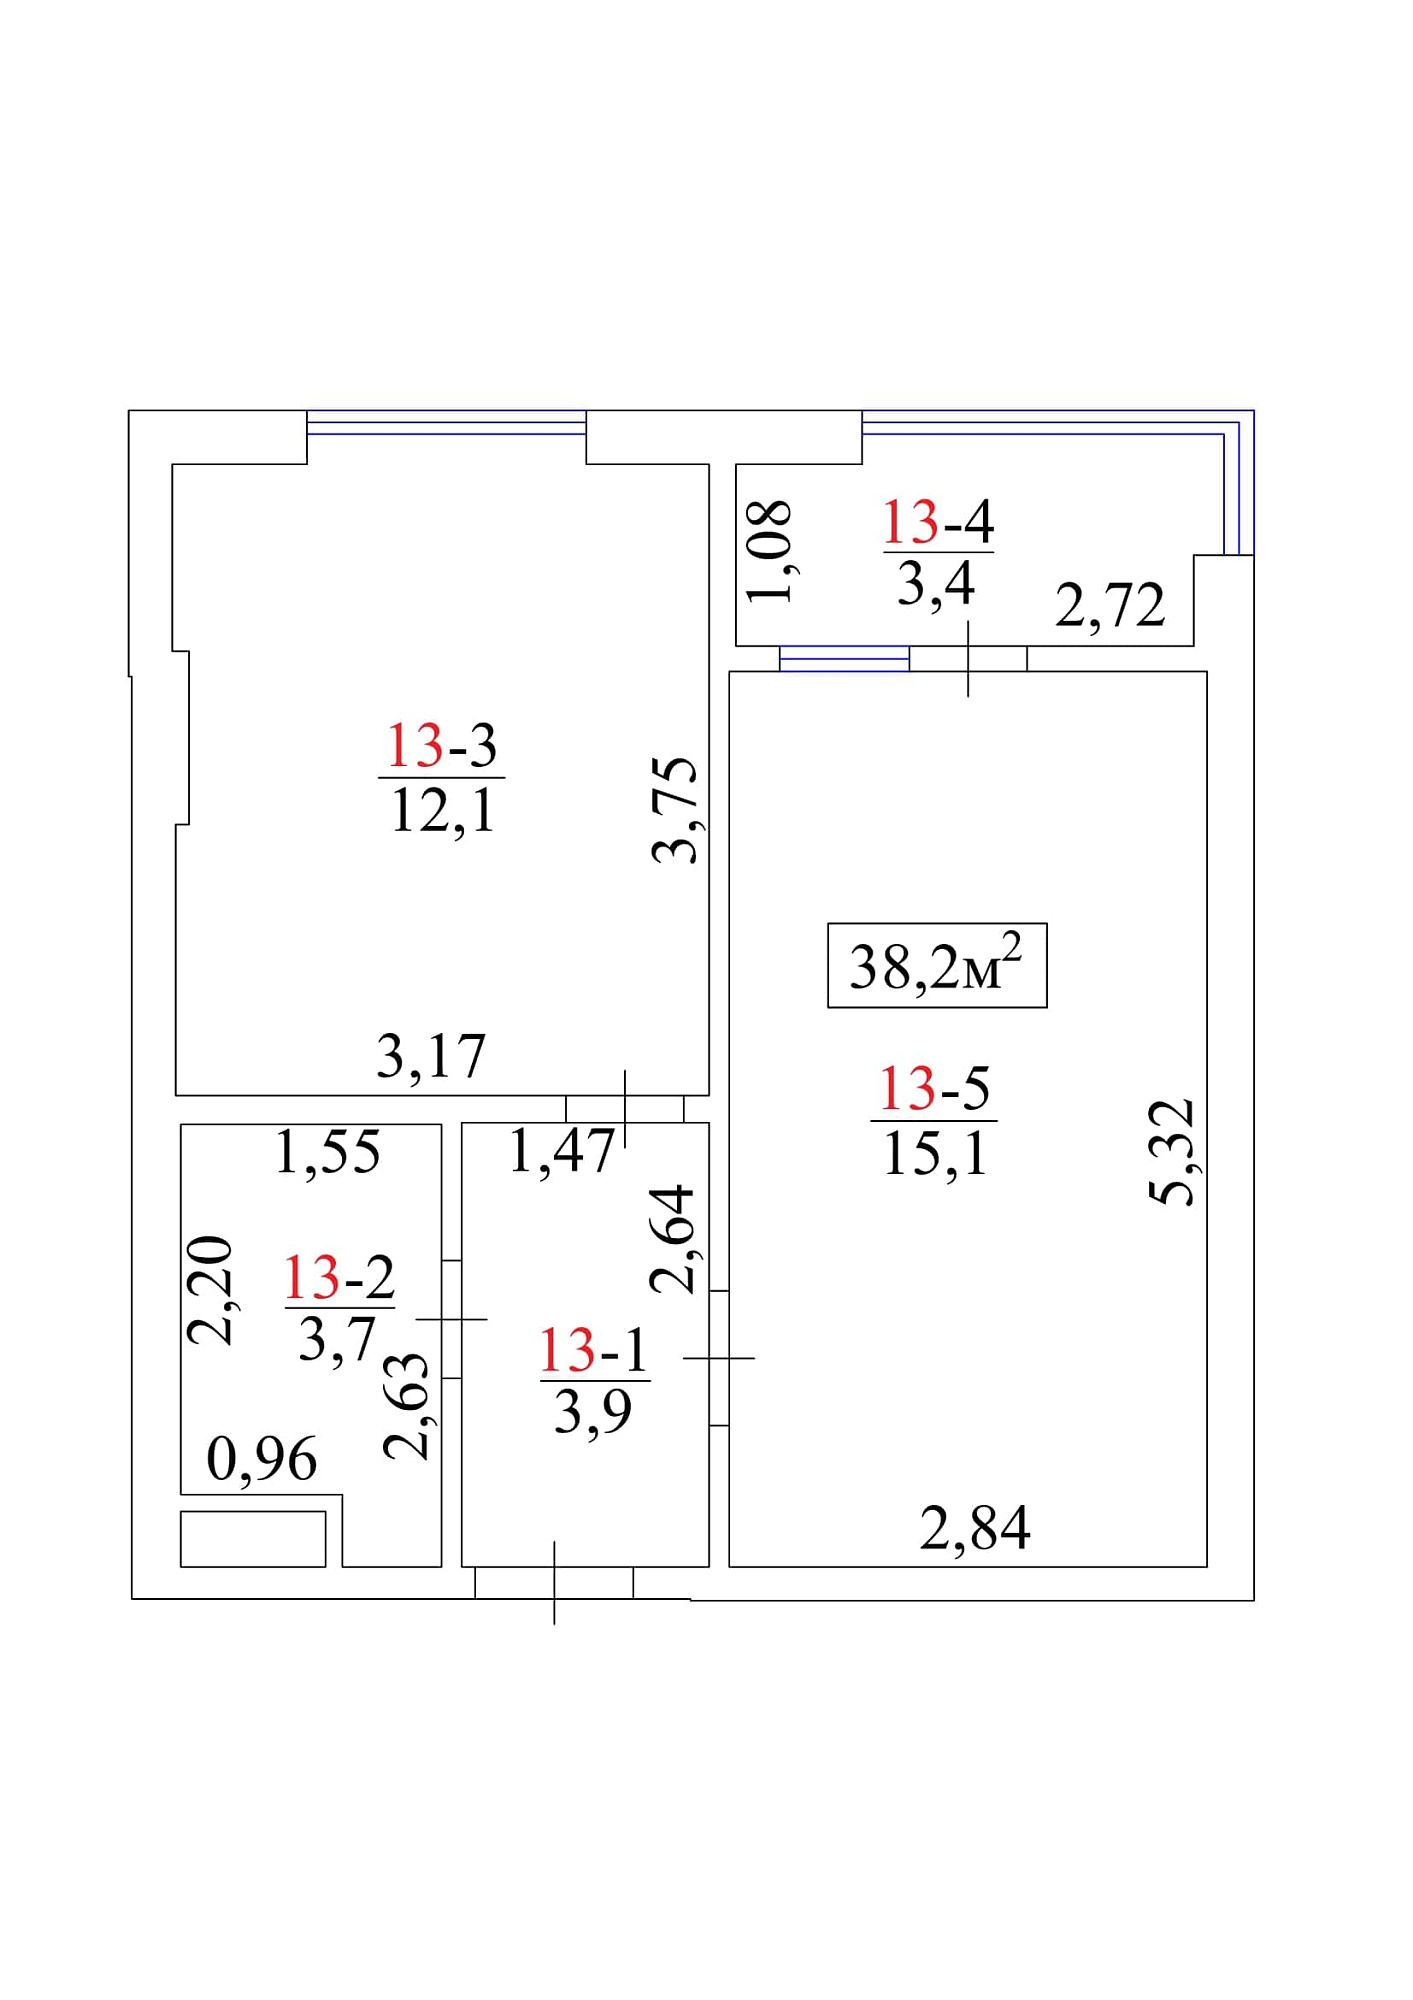 Планировка 1-к квартира площей 38.2м2, AB-01-02/0015а.